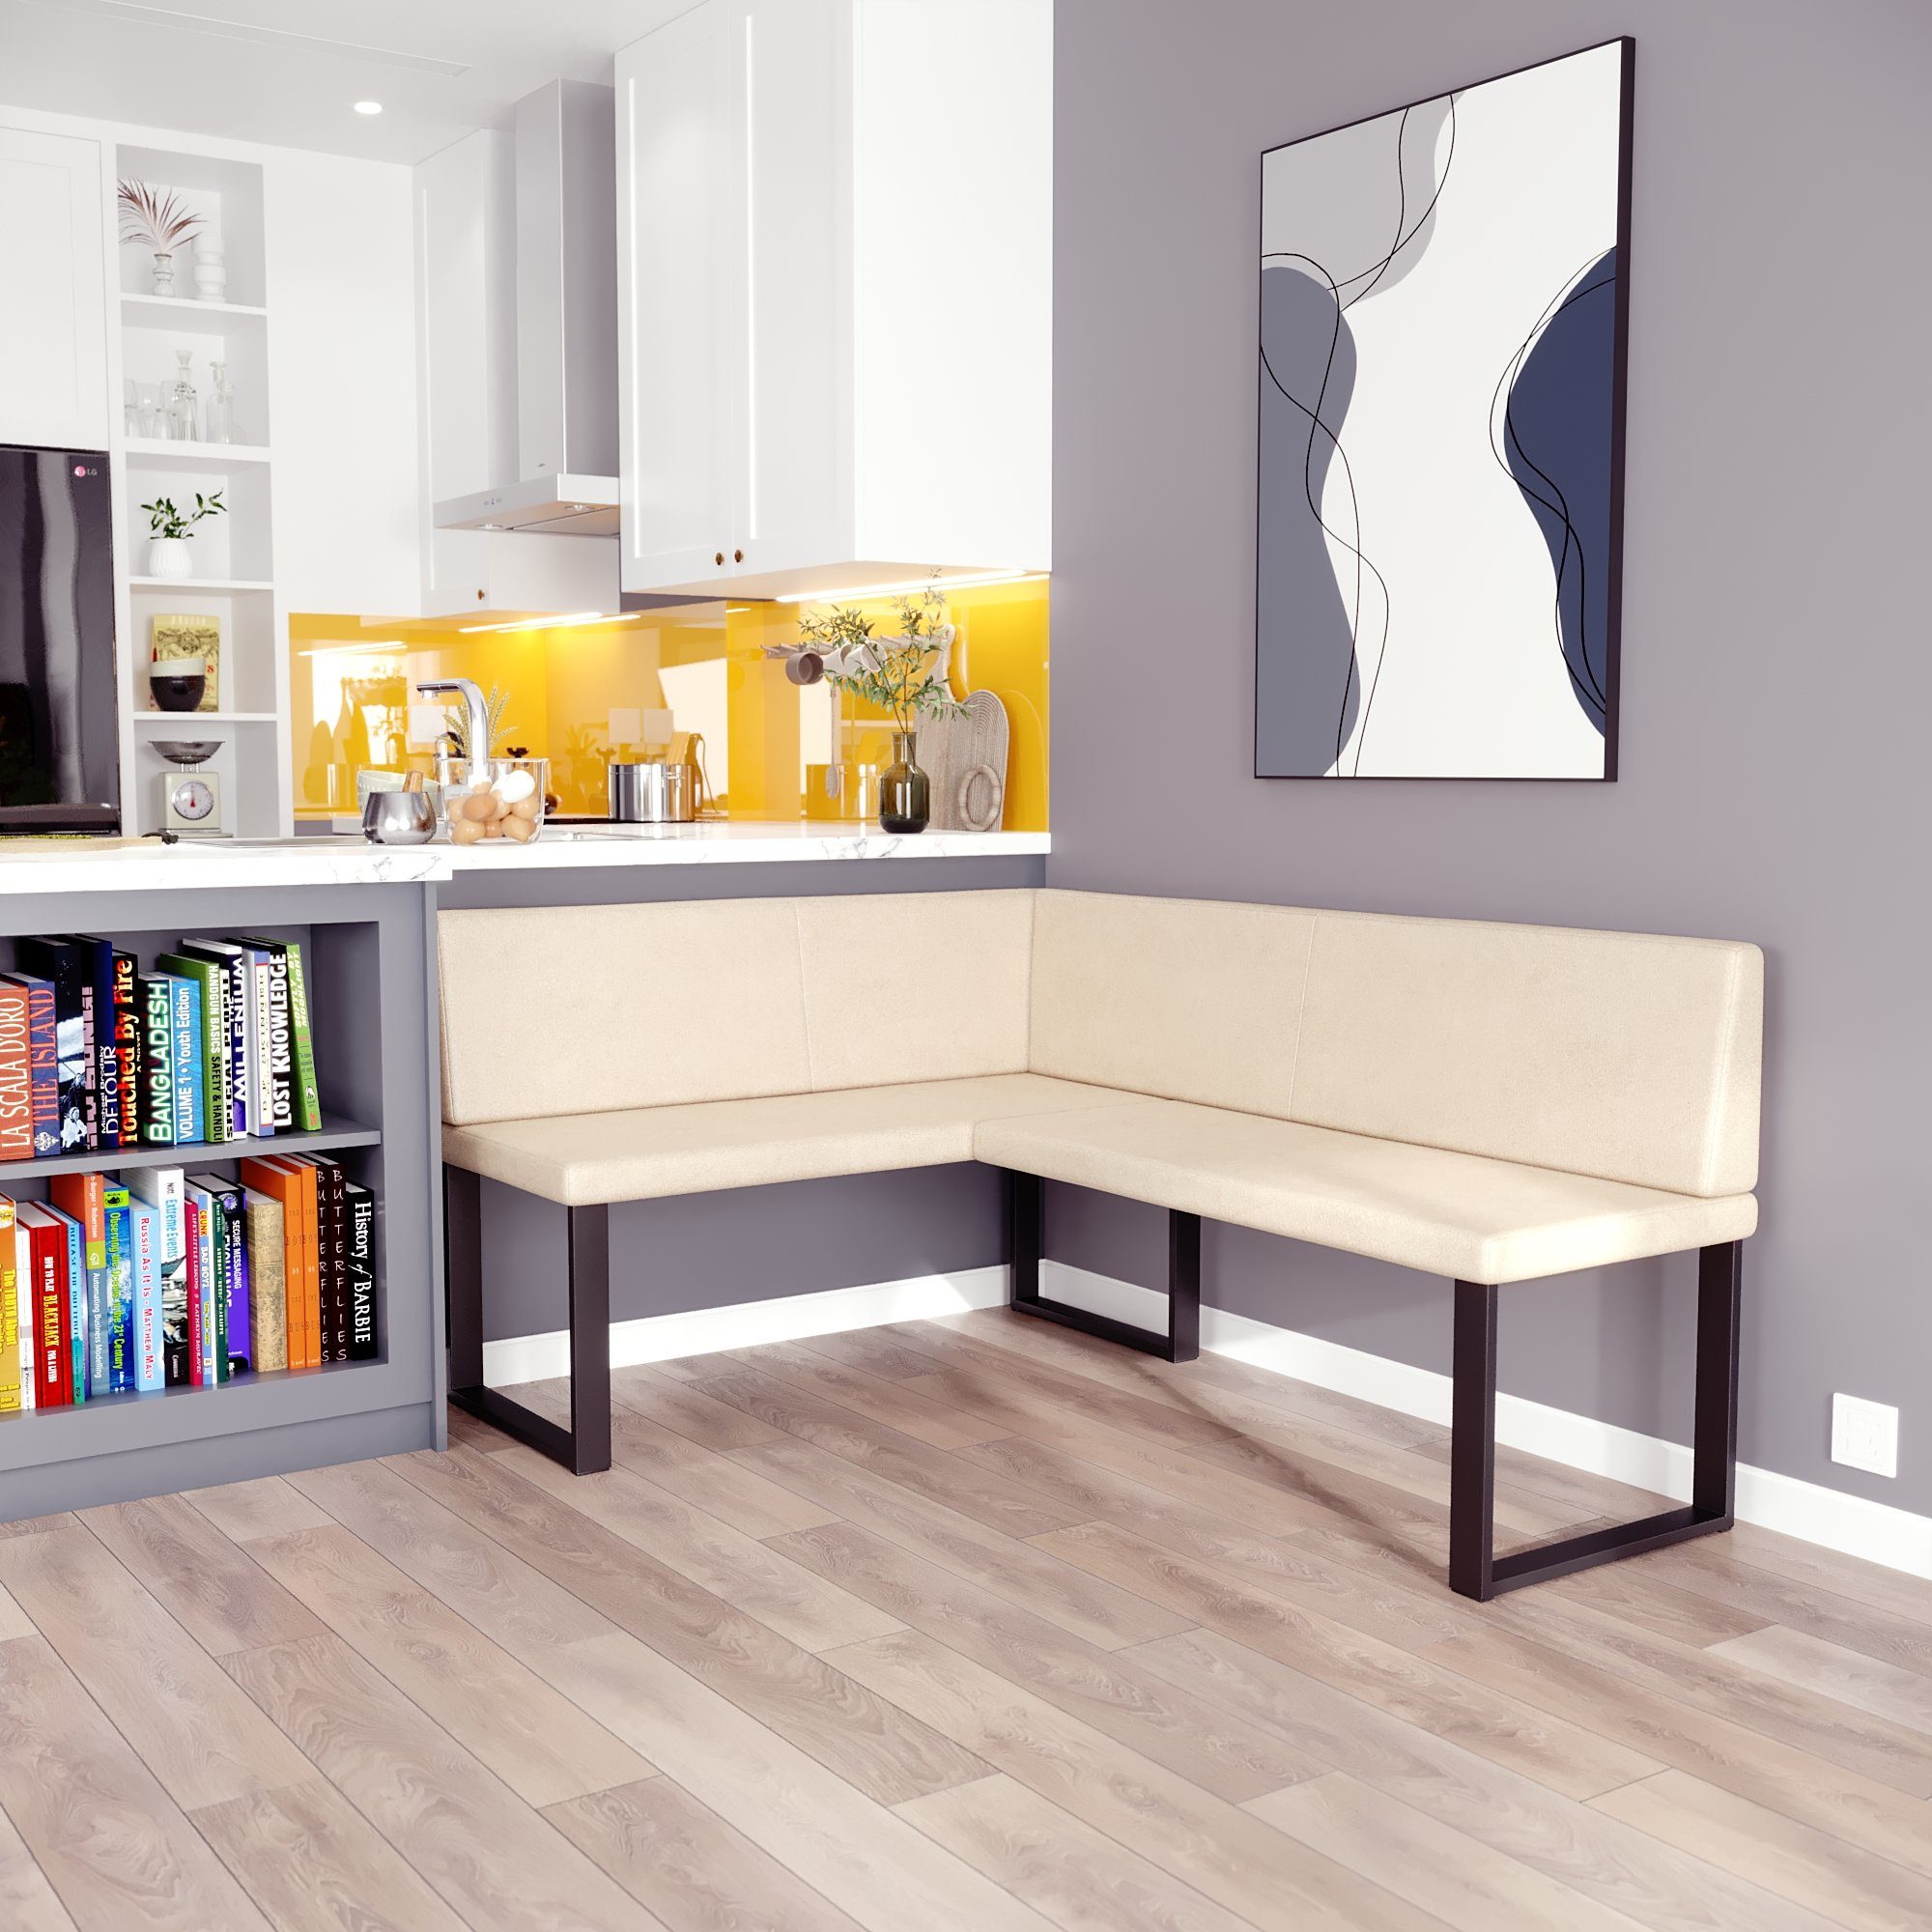 sofa4you Eckbank ALINA Metall, perfekt für Küche, Esszimmer, Wohnzimmer.  Zwei Größen 128x164/142x196